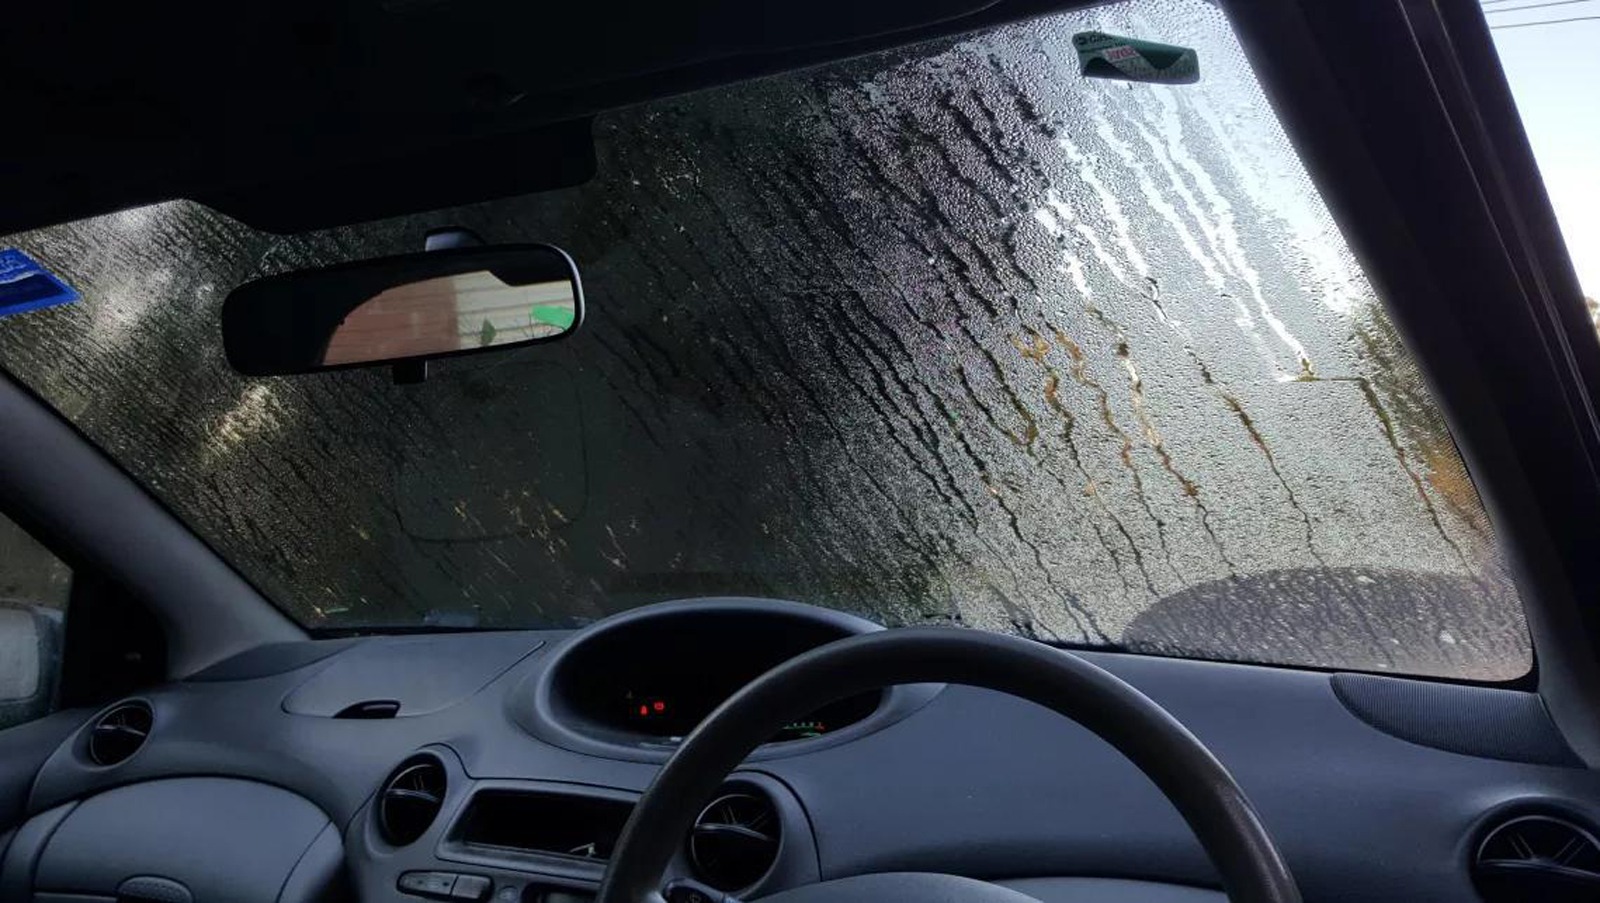 ماشین شما و بارندگی هوا